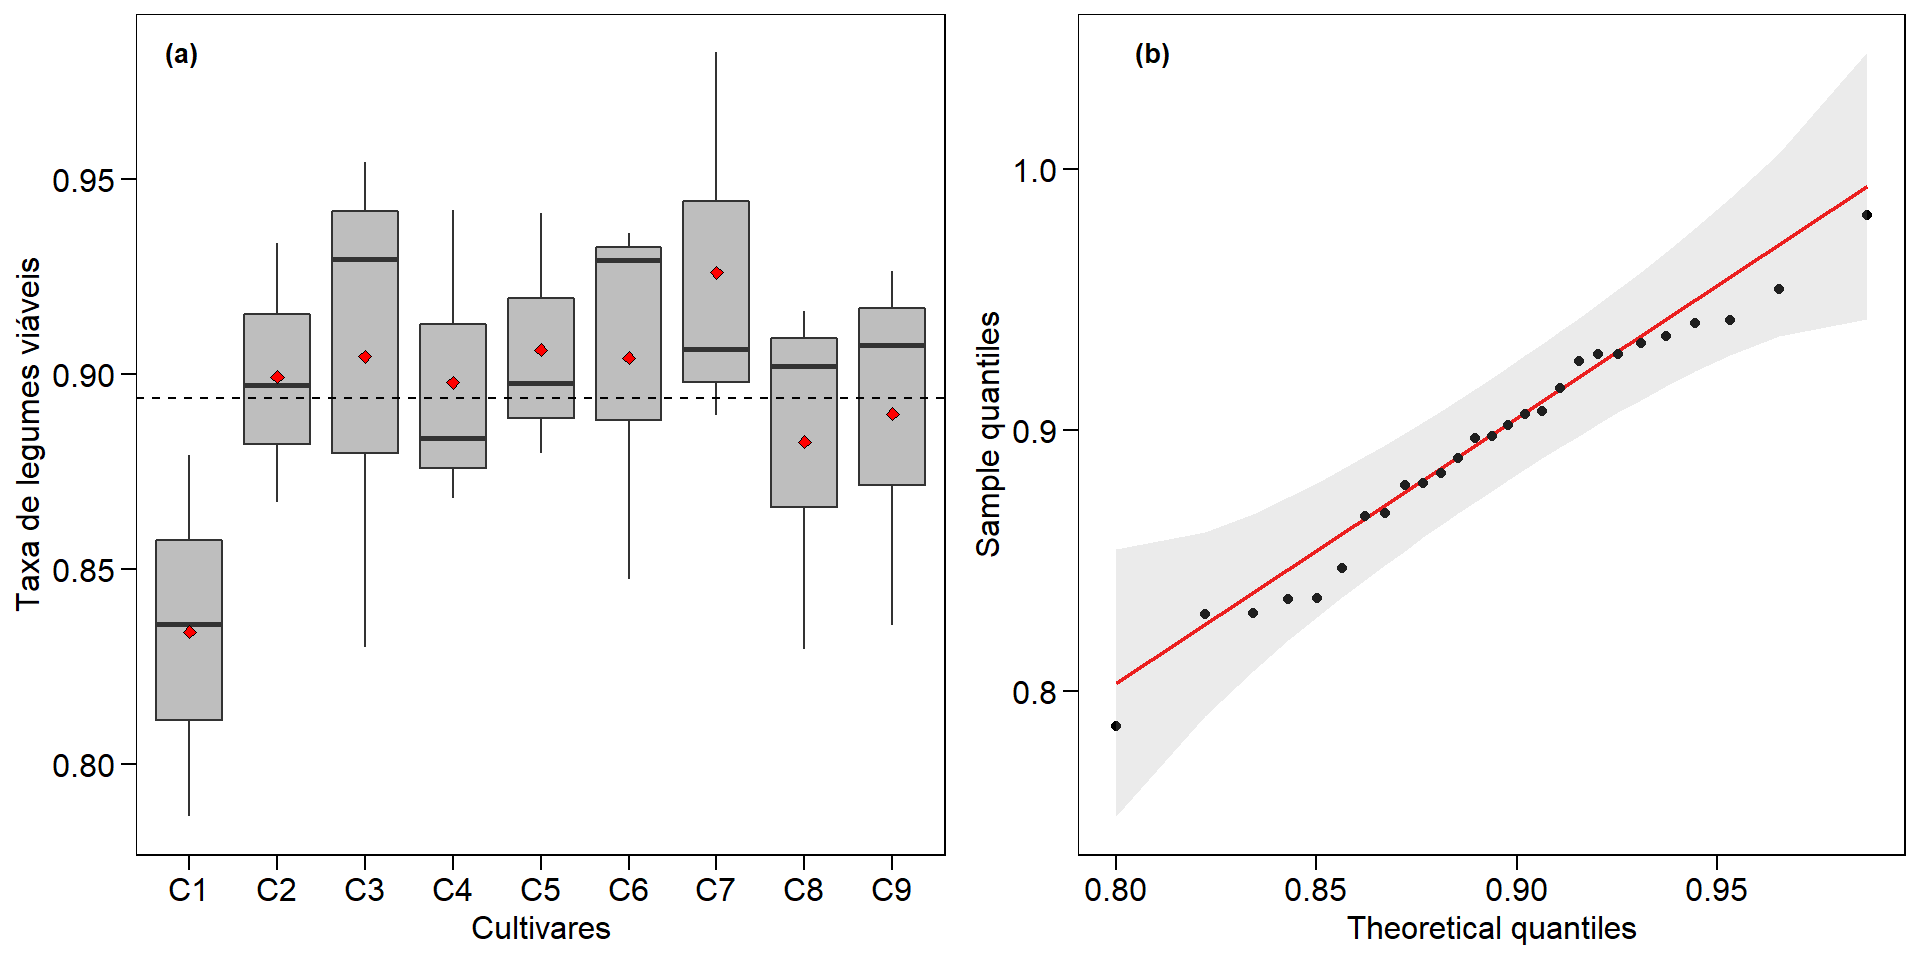 Proporção de legumes viáveis em nove cultivares de soja (a) e gráfico Q-Q plot (b).